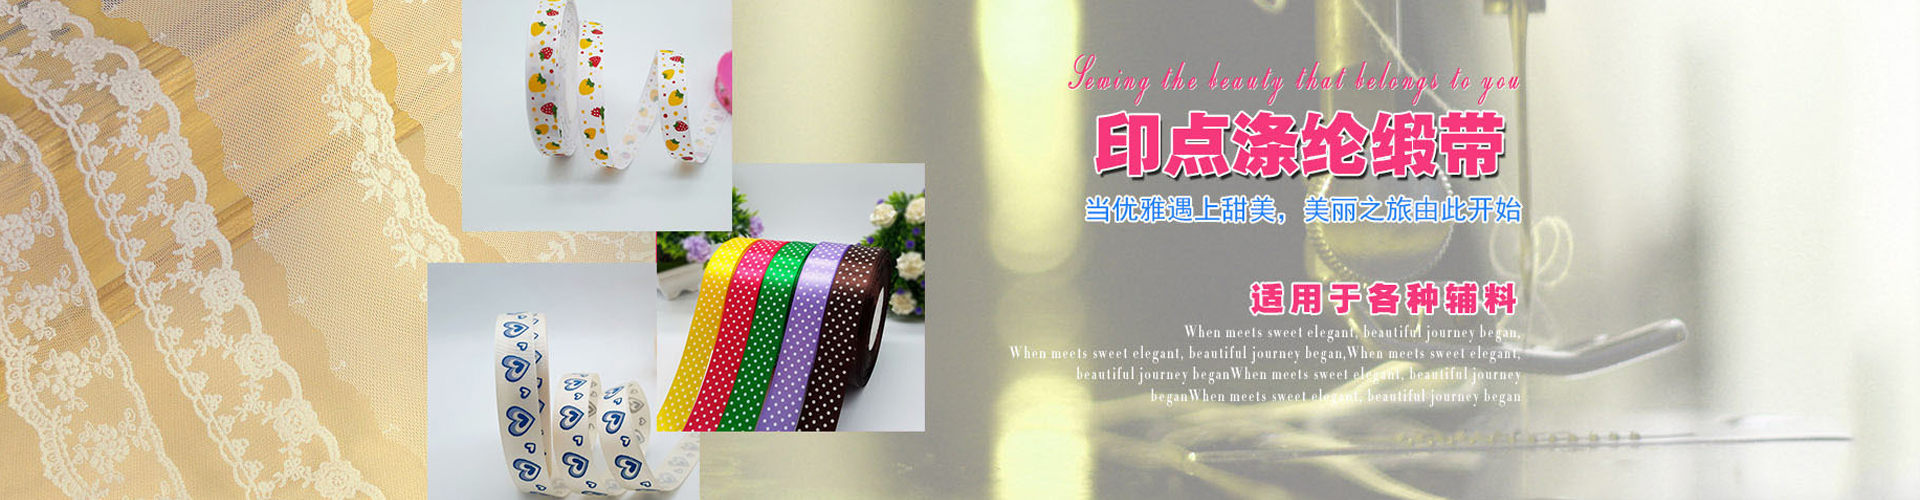 Jiaozuo Xiangsheng Ribbon Co., Ltd.